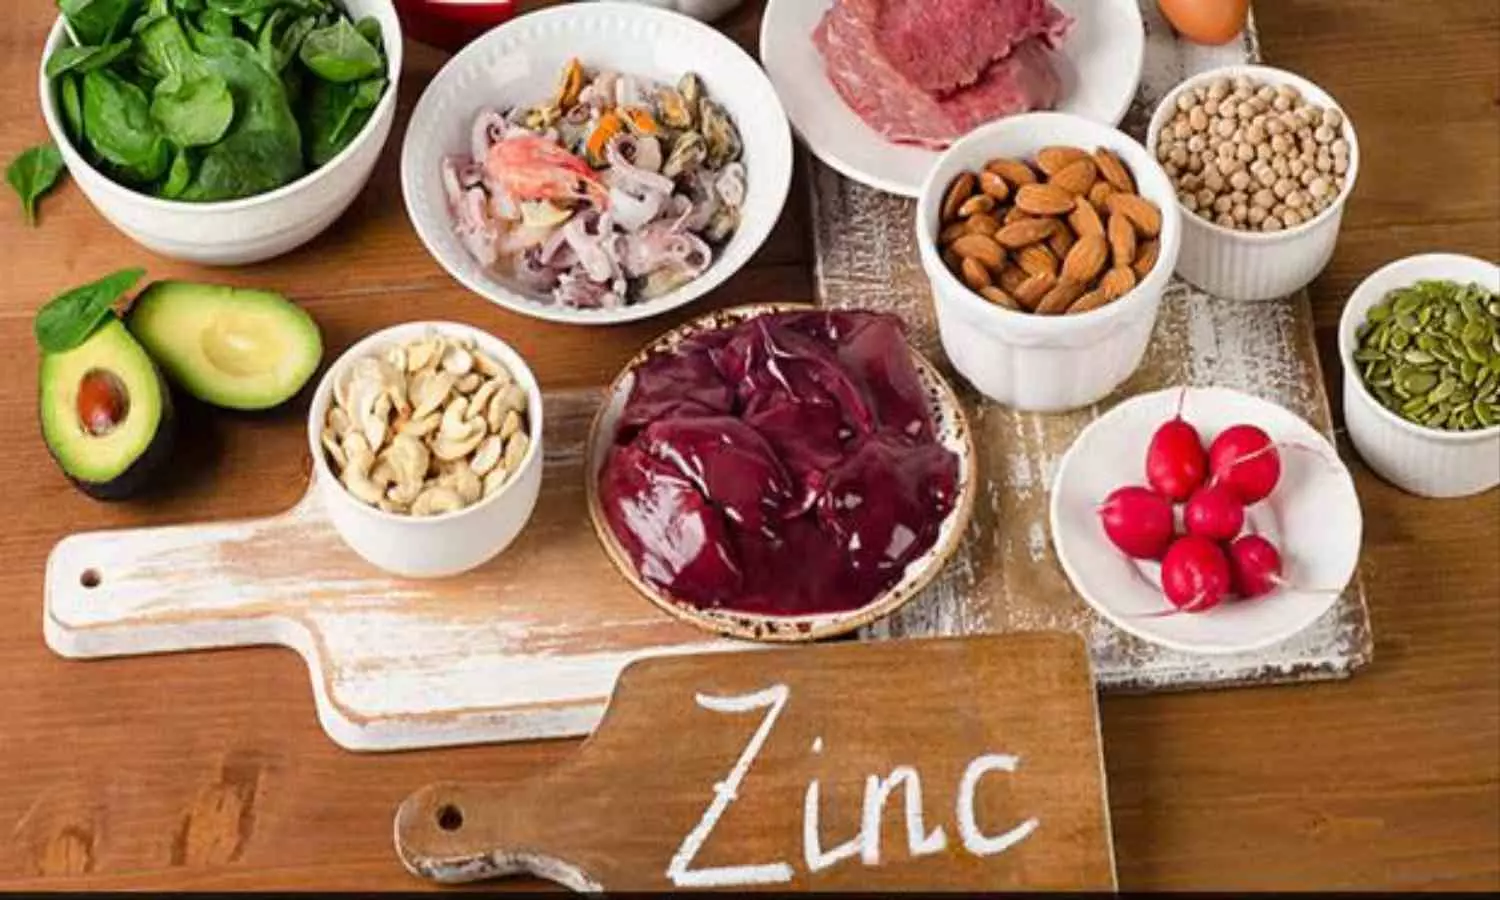 Zinc-Rich Foods: शरीर के लिए बेहद जरूरी है जिंक? जानिए इसके फायदे